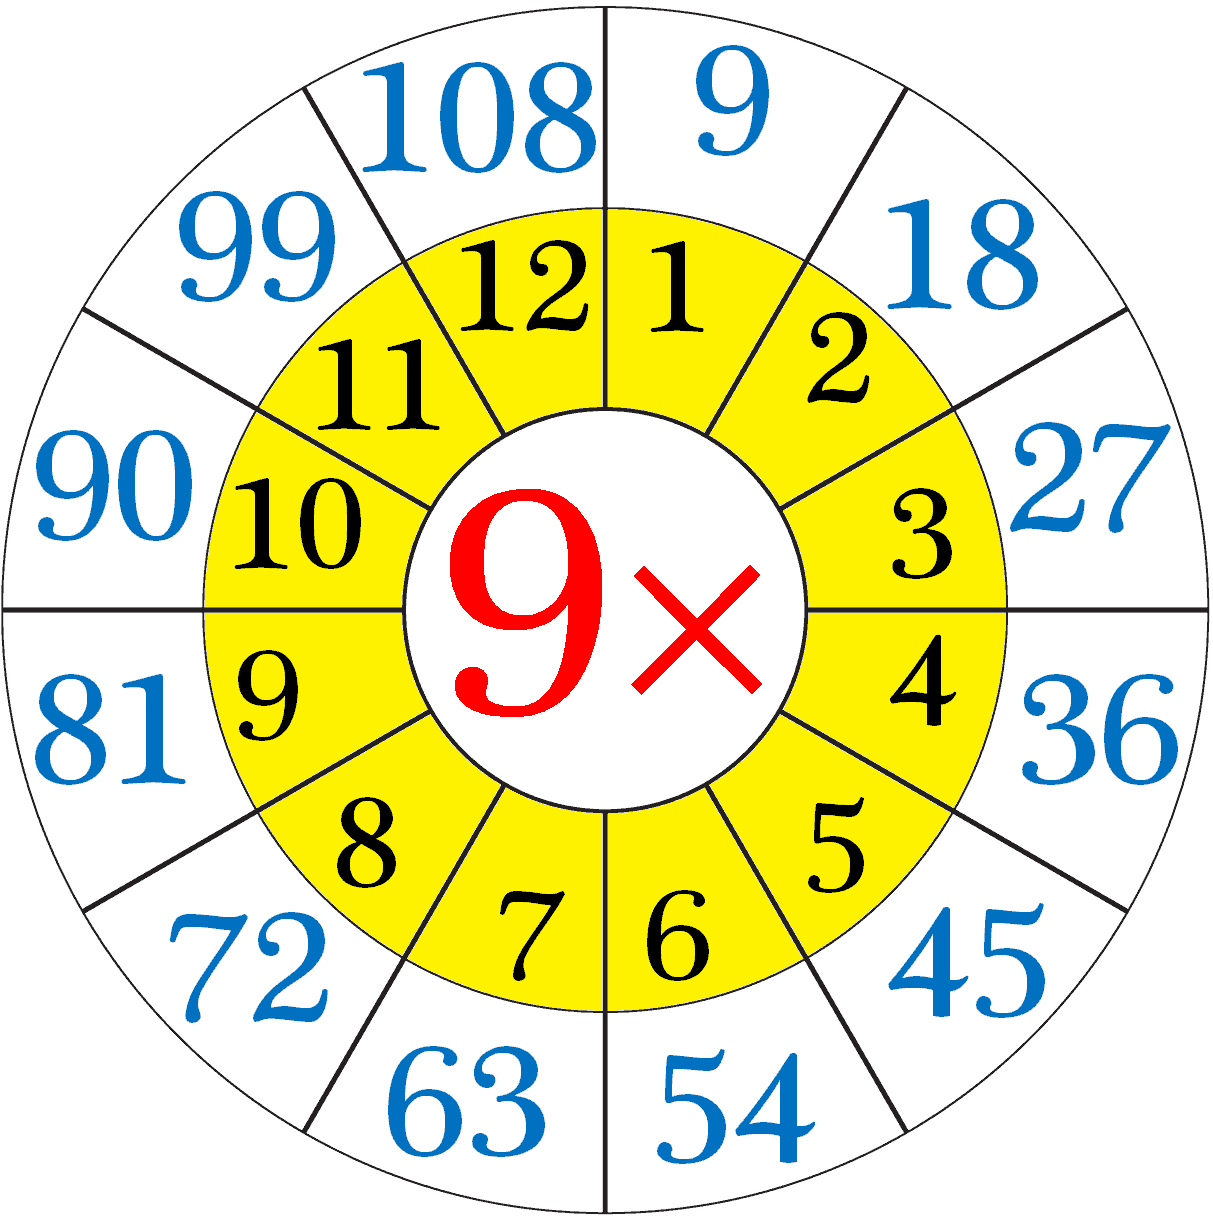  multiplication-table-of-nine